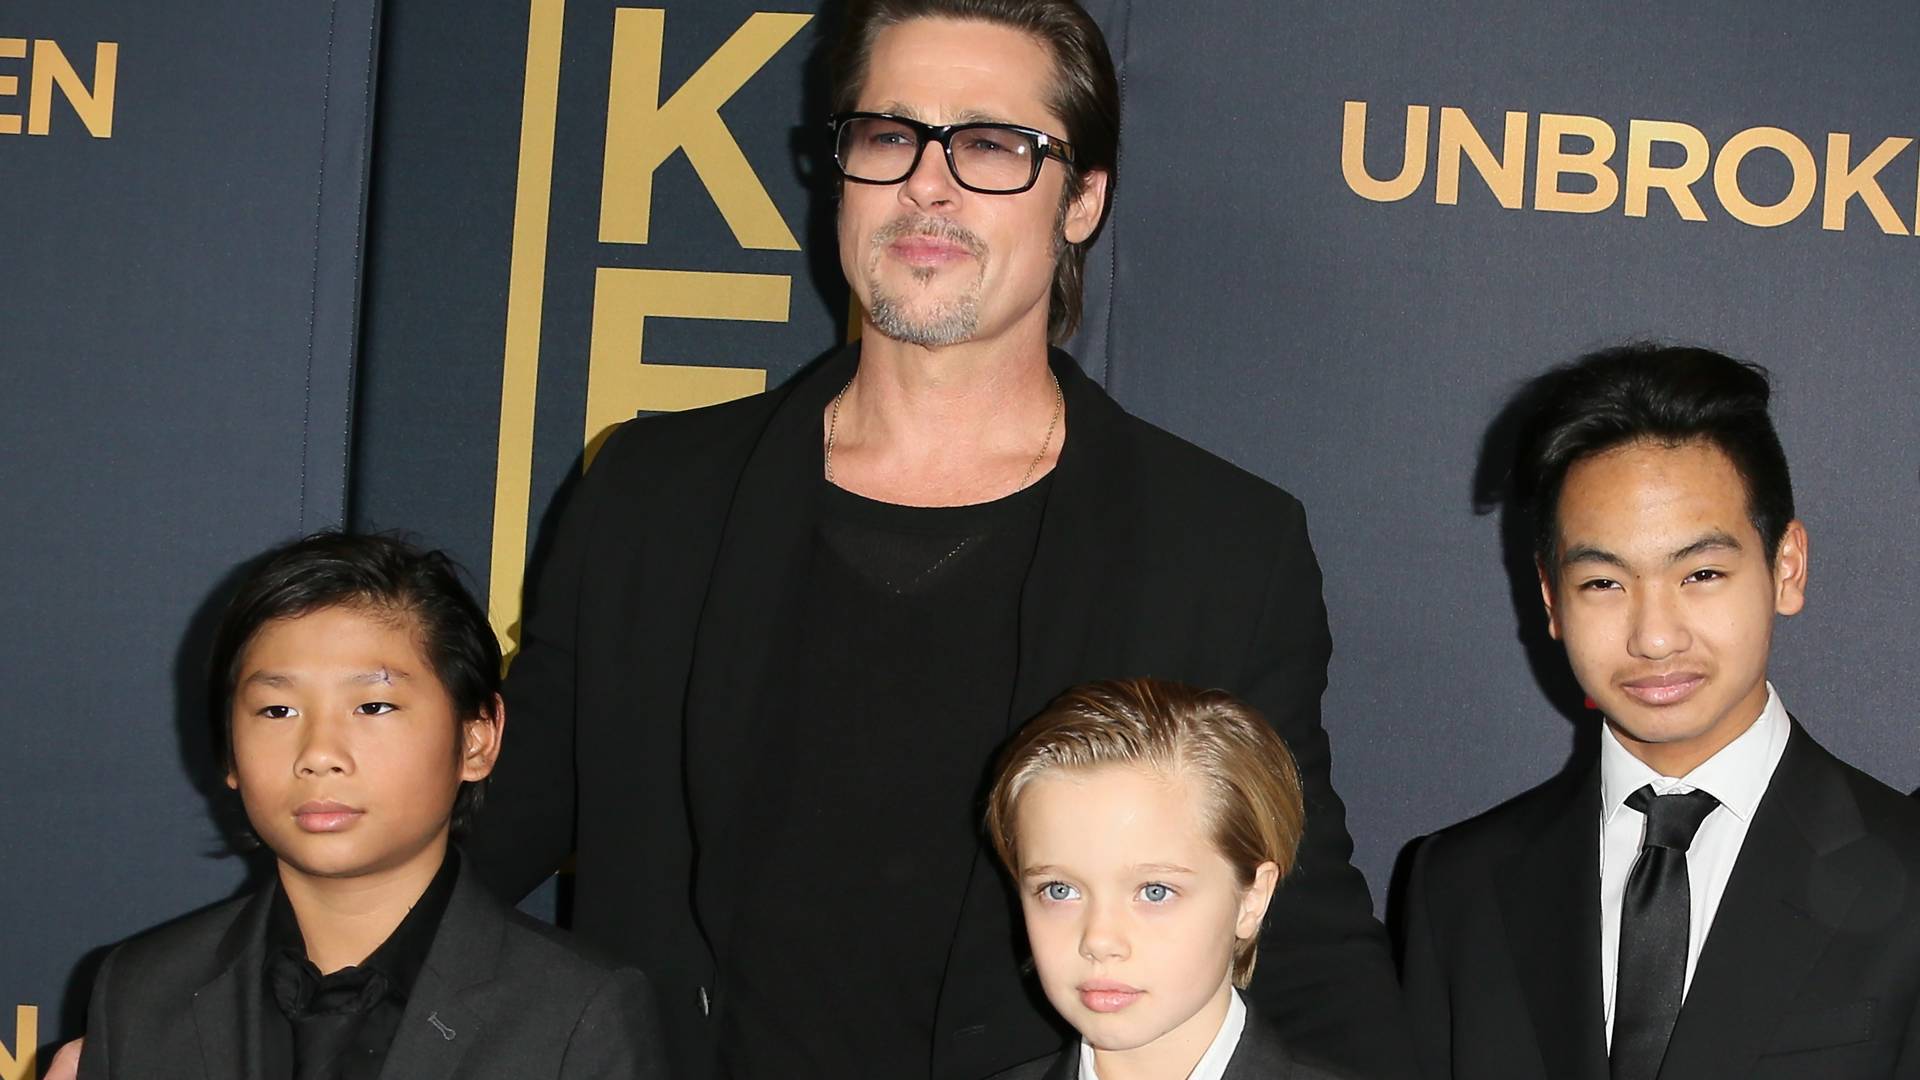 Pitt nie che żeby jego córka ubierała się jak chłopiec. Jolie utrudnia mu kontakt z dziećmi